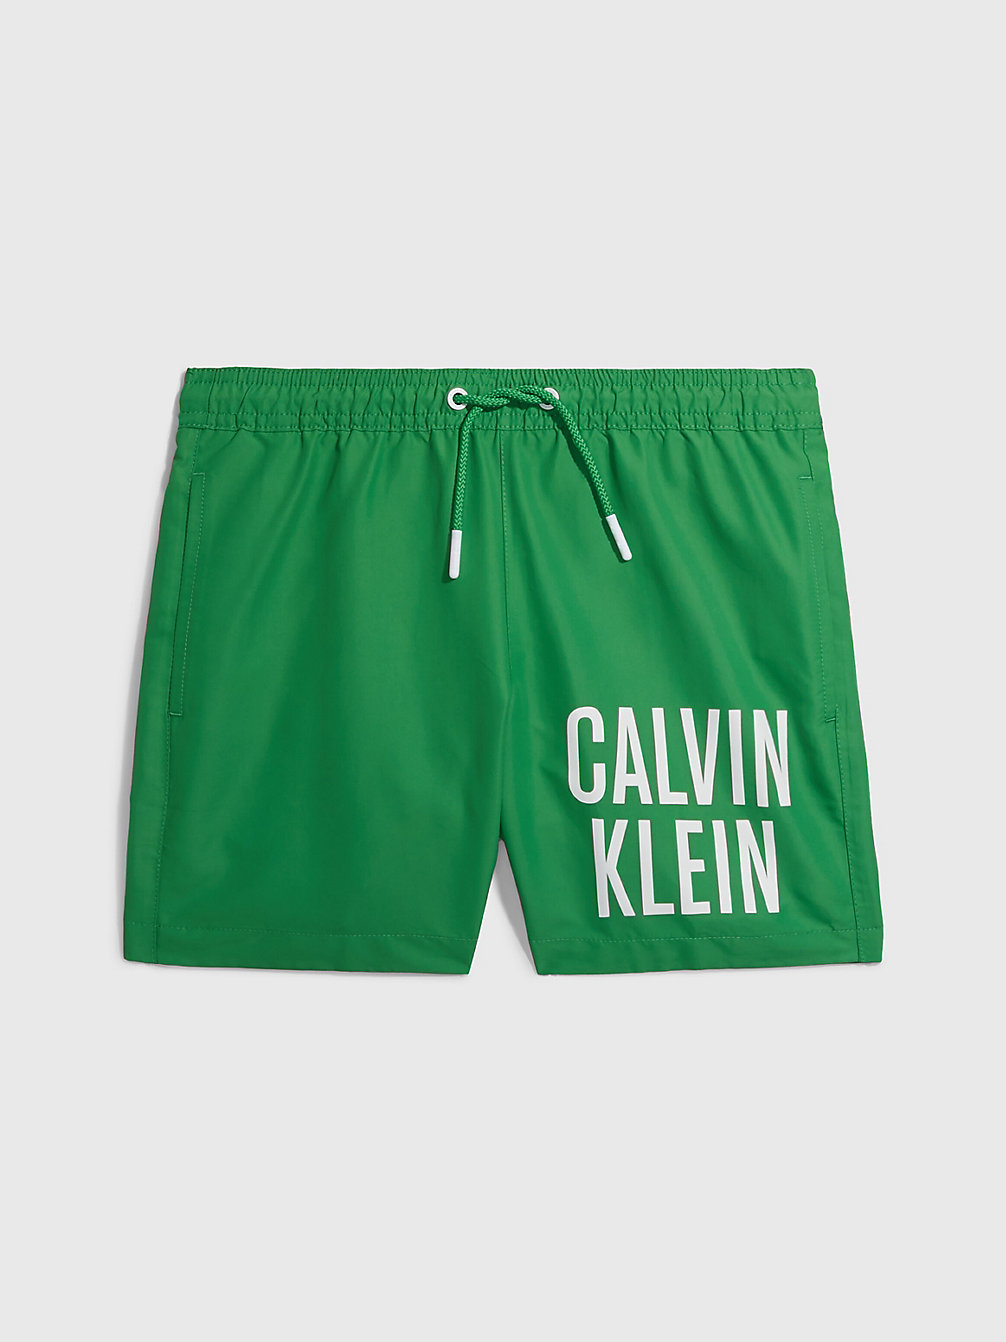 GREEN APPLE Badeshorts Für Jungen - Intense Power undefined Jungen Calvin Klein